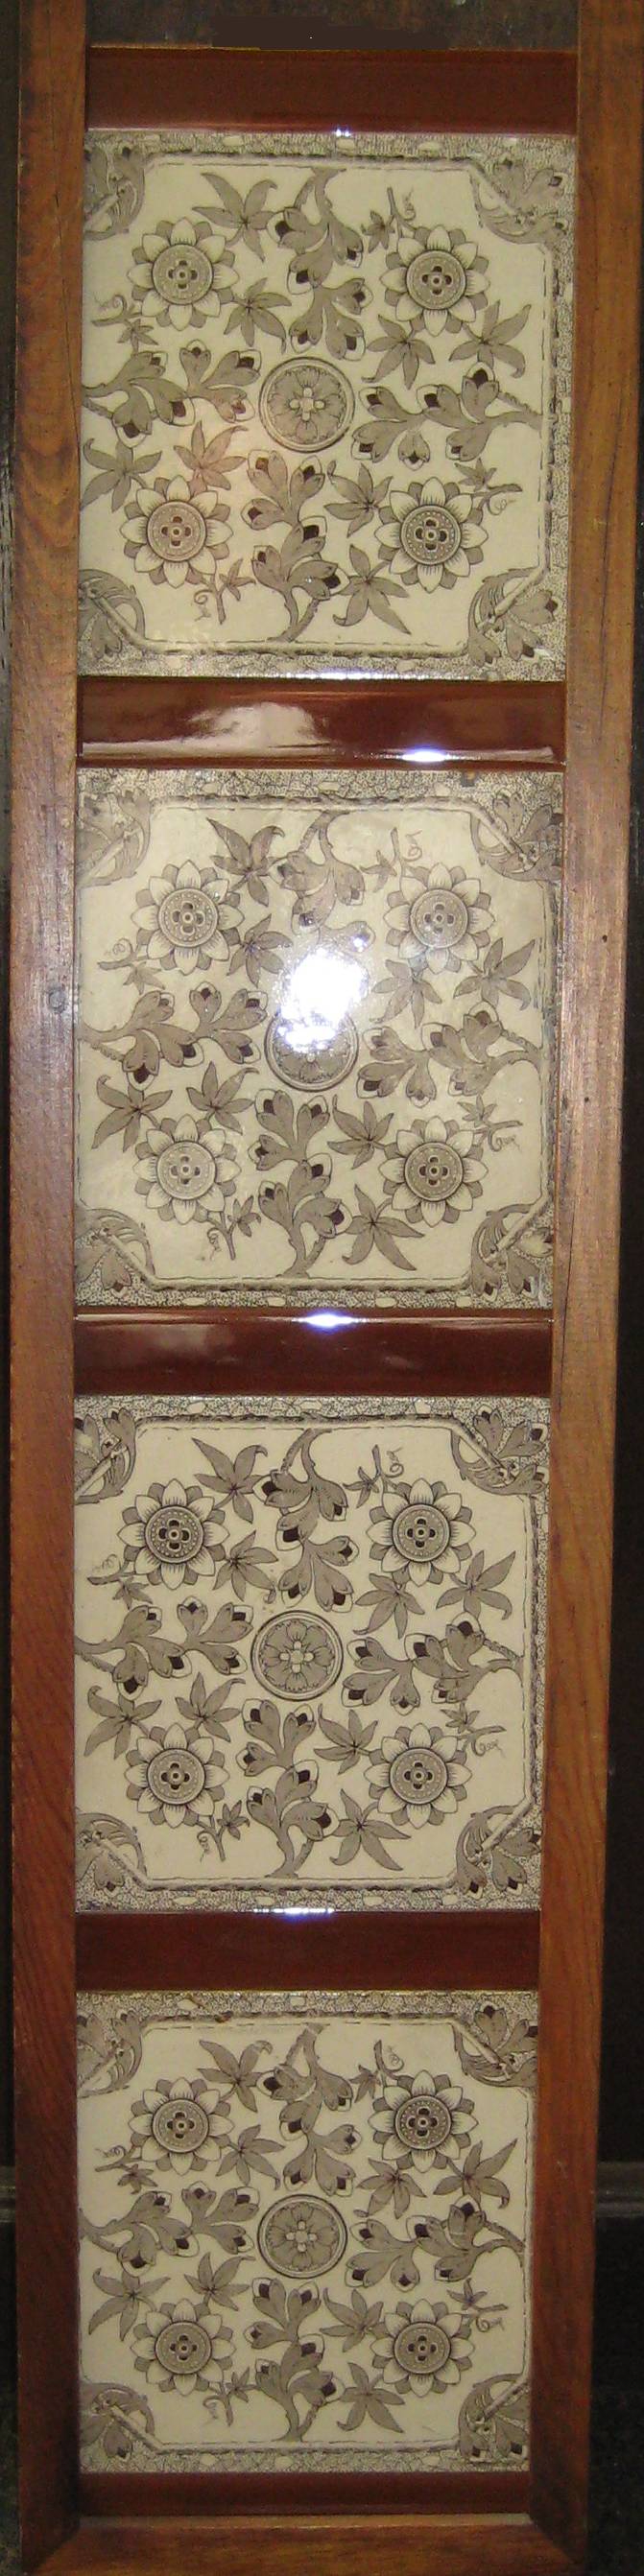 Antique Tile Set 